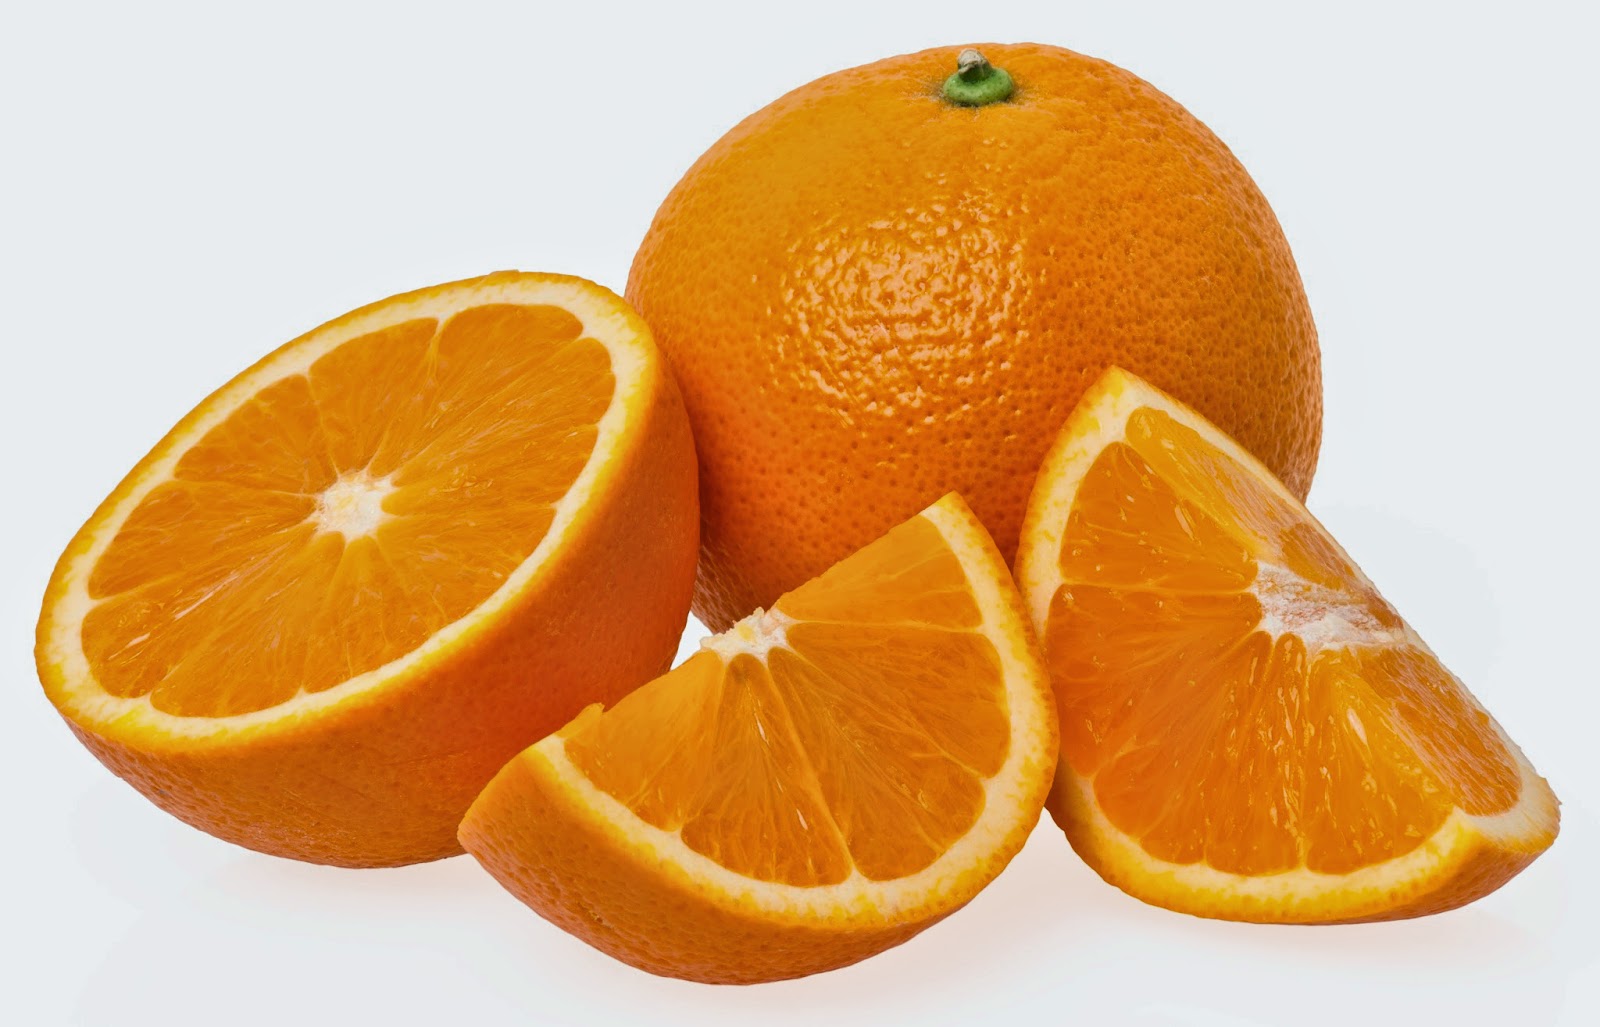 فوائد البرتقال لتقوية المناعة تعالي معنا للتعرفي عليها